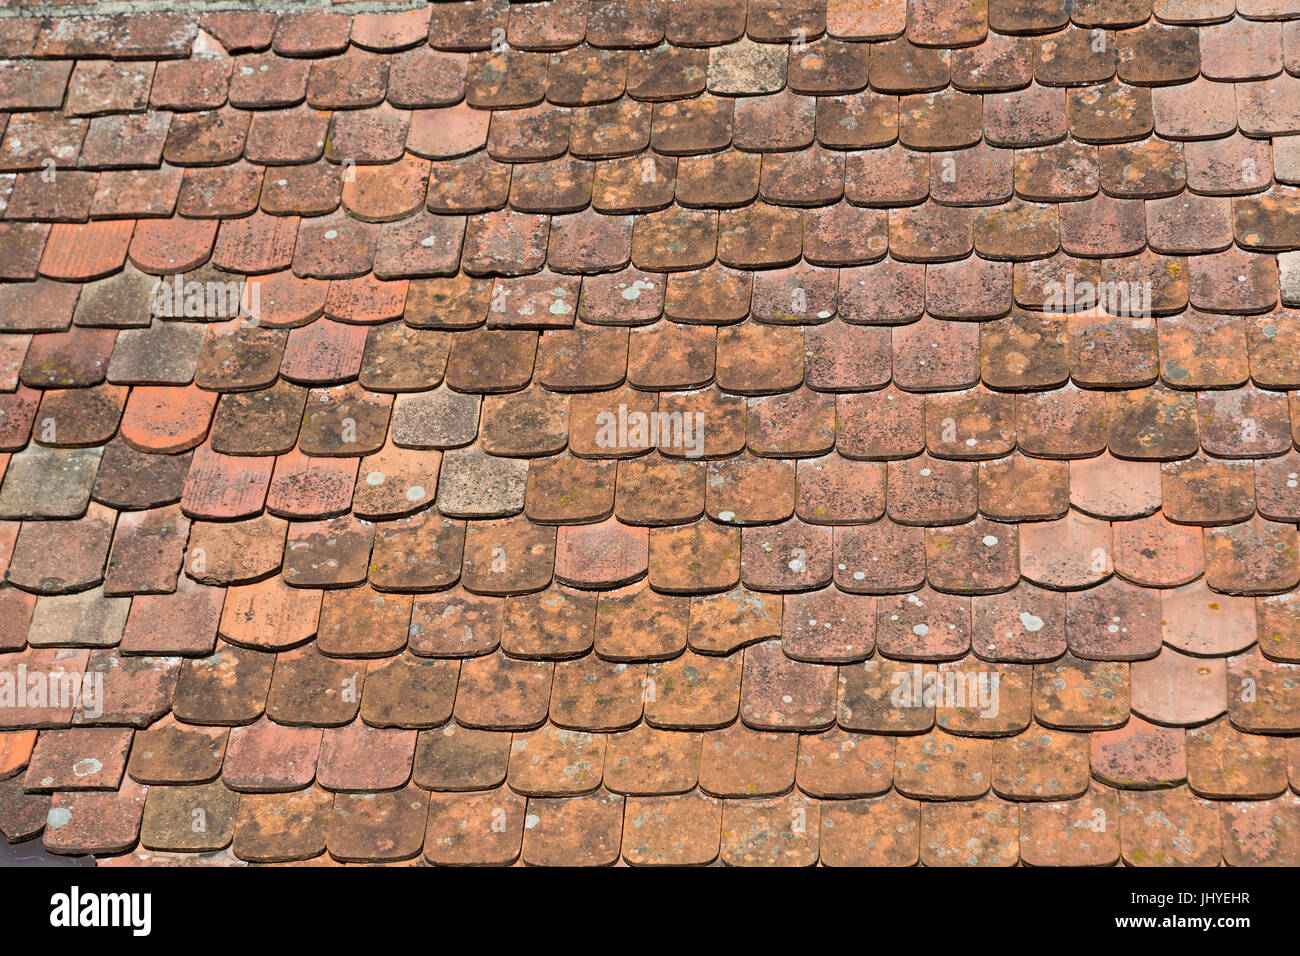 Roofing tile, daring wrestler chapel, Lower Austria, Austria - Roof, chapel of daring ring, Lower Austria, Austria, Dachziegel, Kuehnringer Kapelle, N Stock Photo